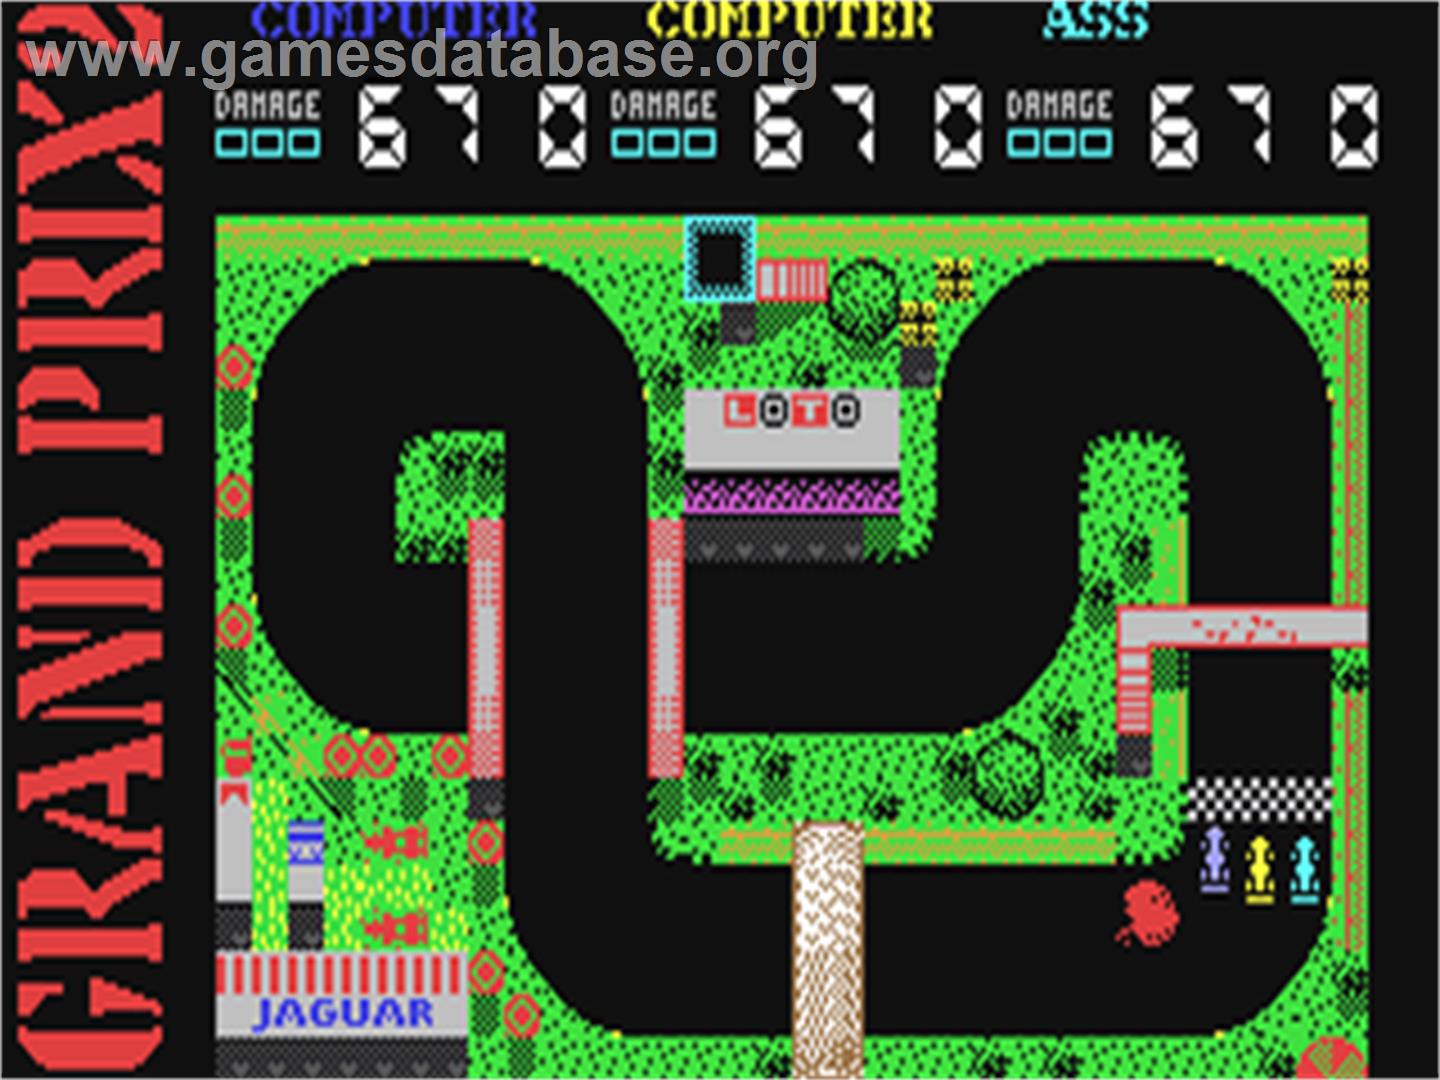 Grand Prix Simulator 2 - Commodore 64 - Artwork - In Game